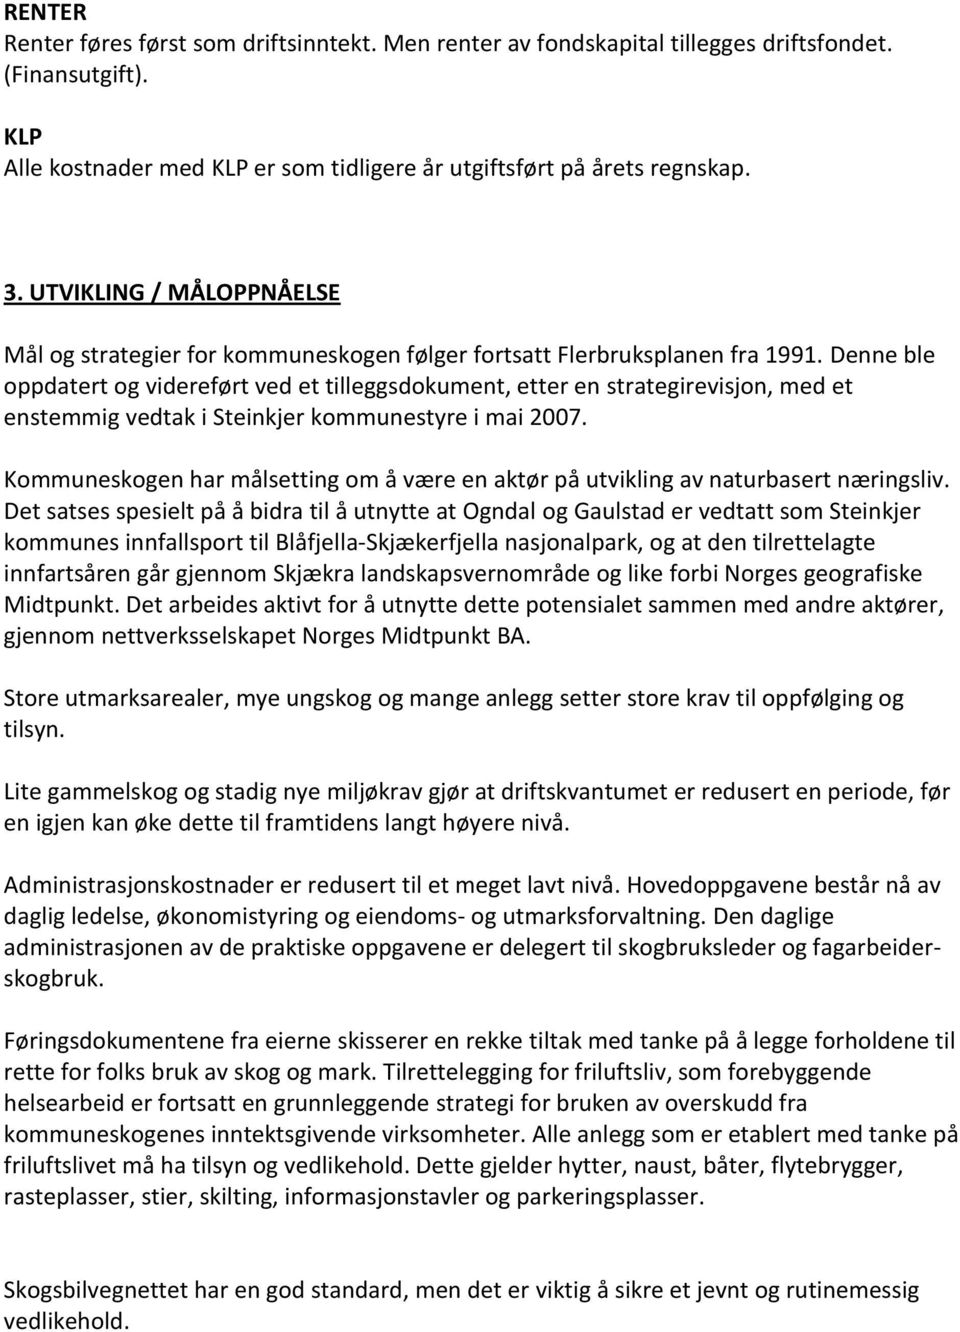 Denne ble oppdatert og videreført ved et tilleggsdokument, etter en strategirevisjon, med et enstemmig vedtak i Steinkjer kommunestyre i mai 2007.